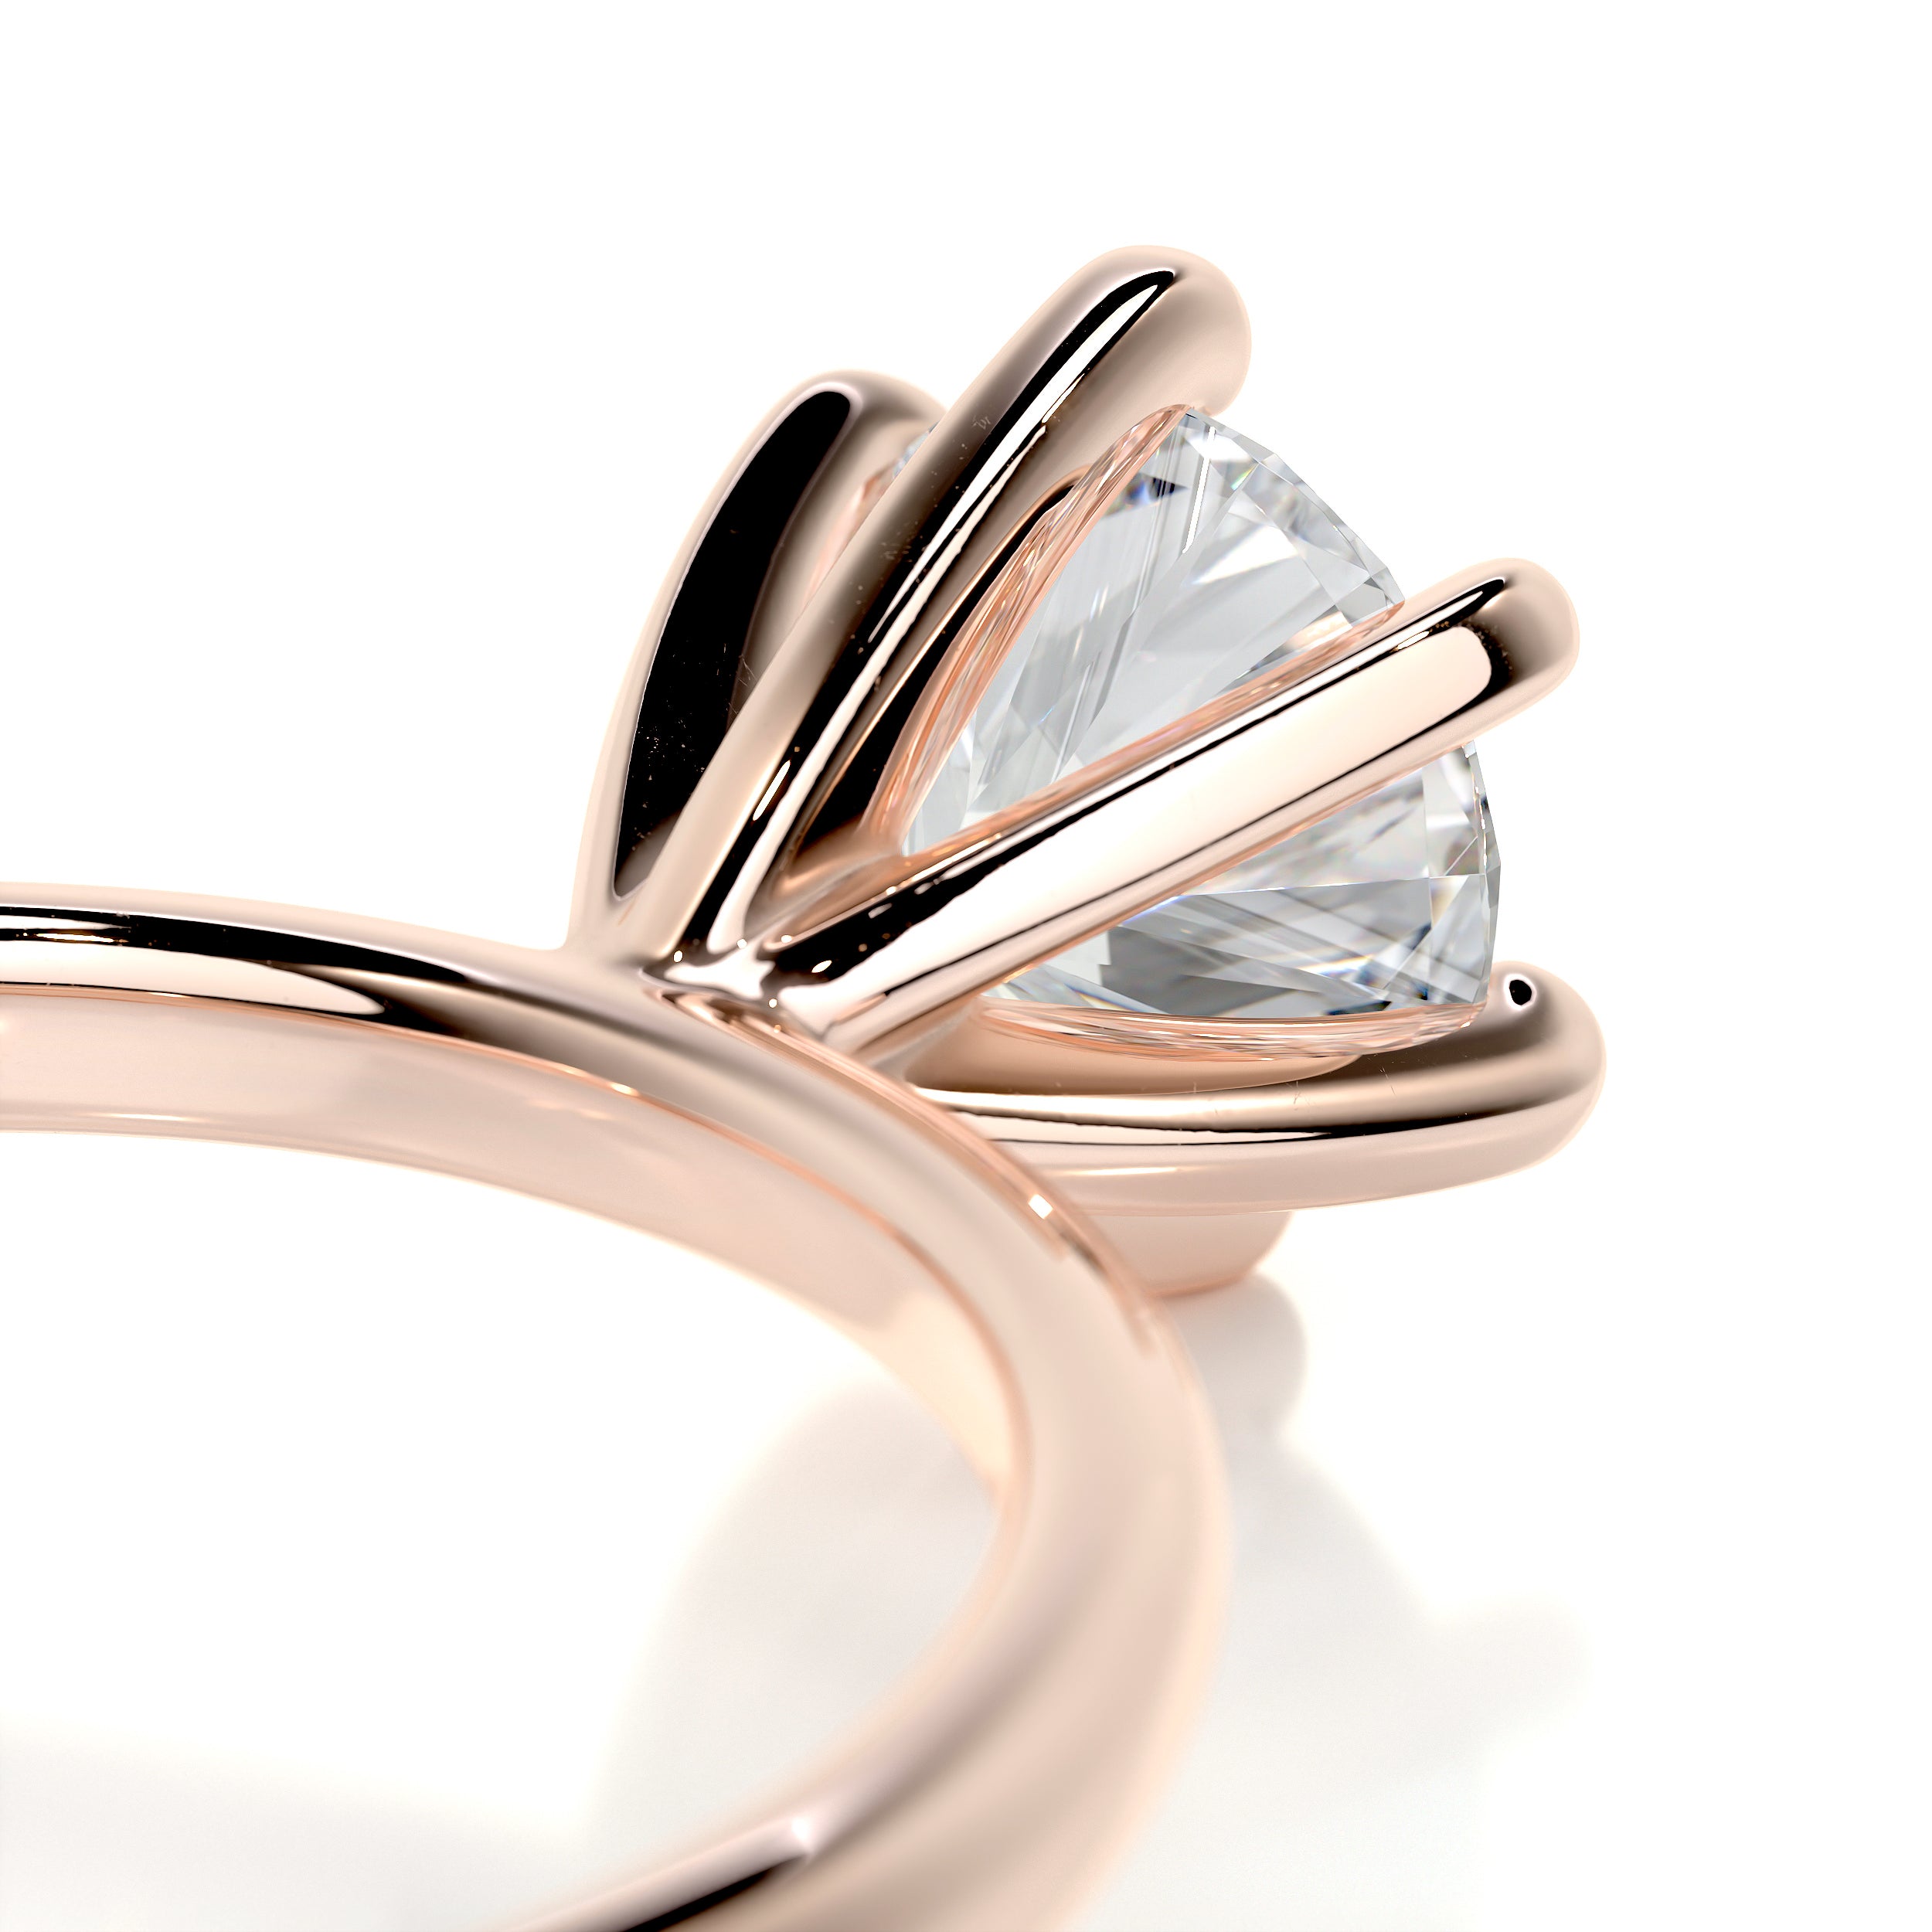 Samantha Diamond Engagement Ring   (0.75 Carat) -14K Rose Gold